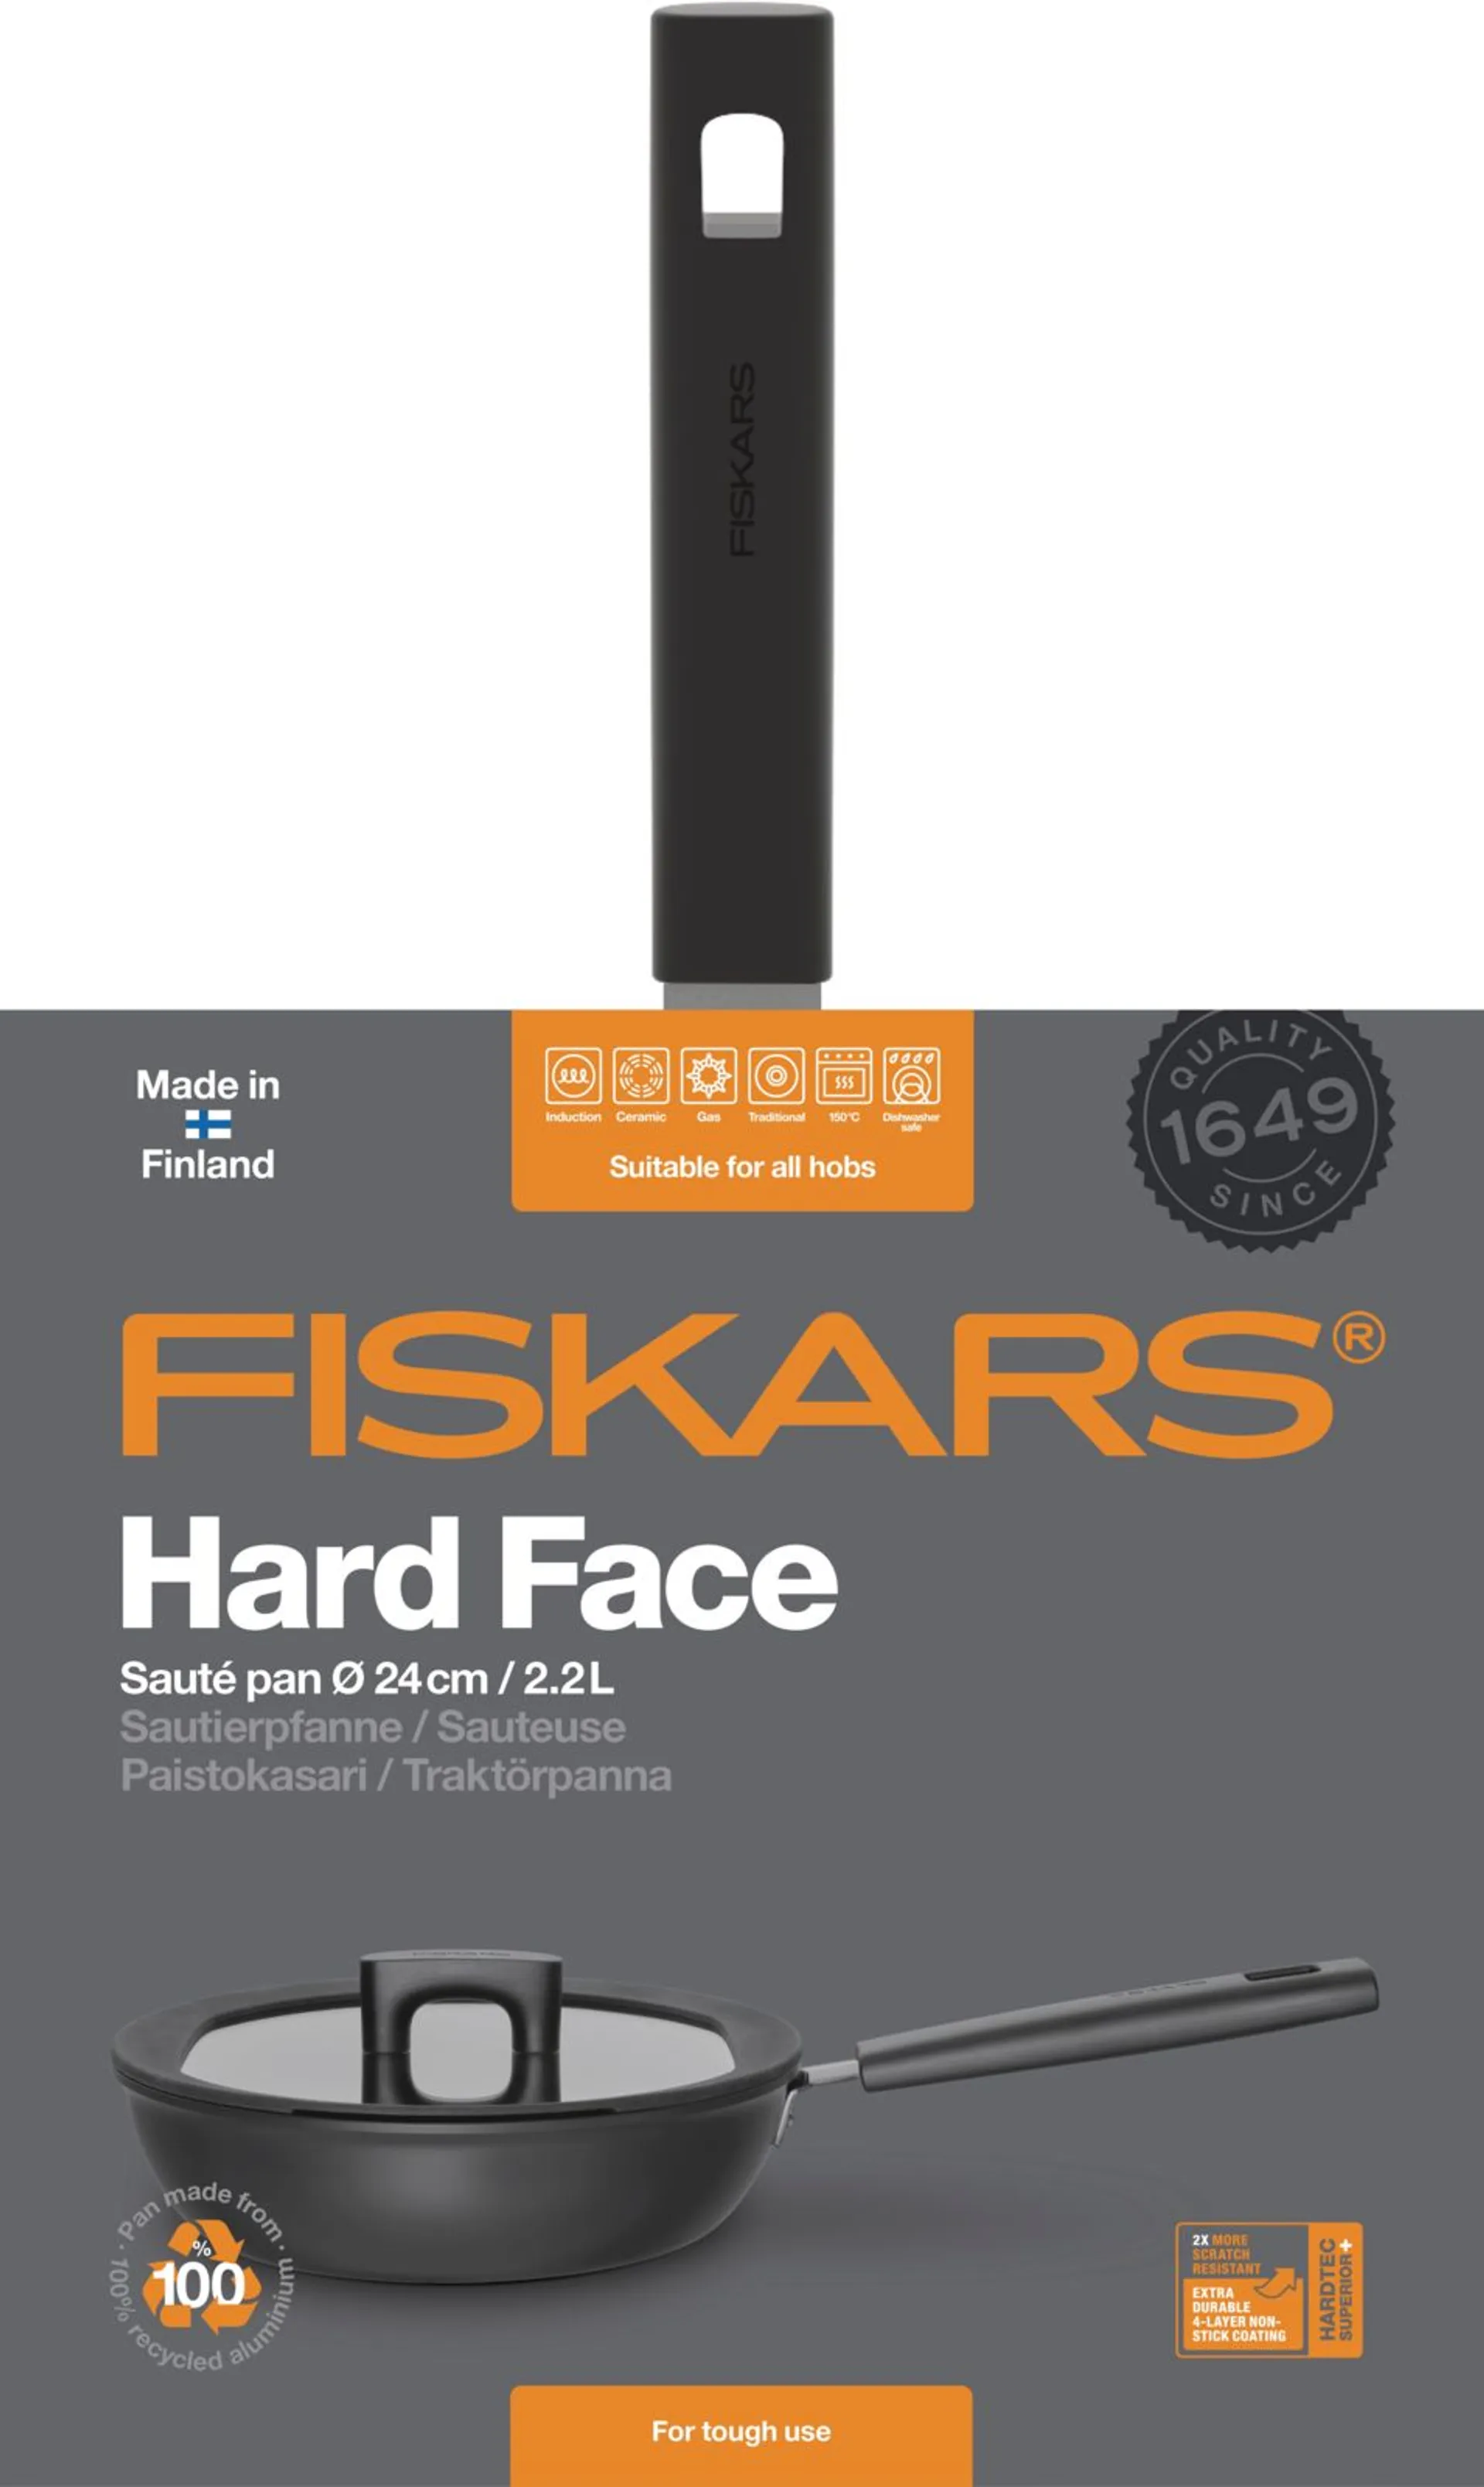 Fiskars Hard Face 24cm paistokasari kannella - 2